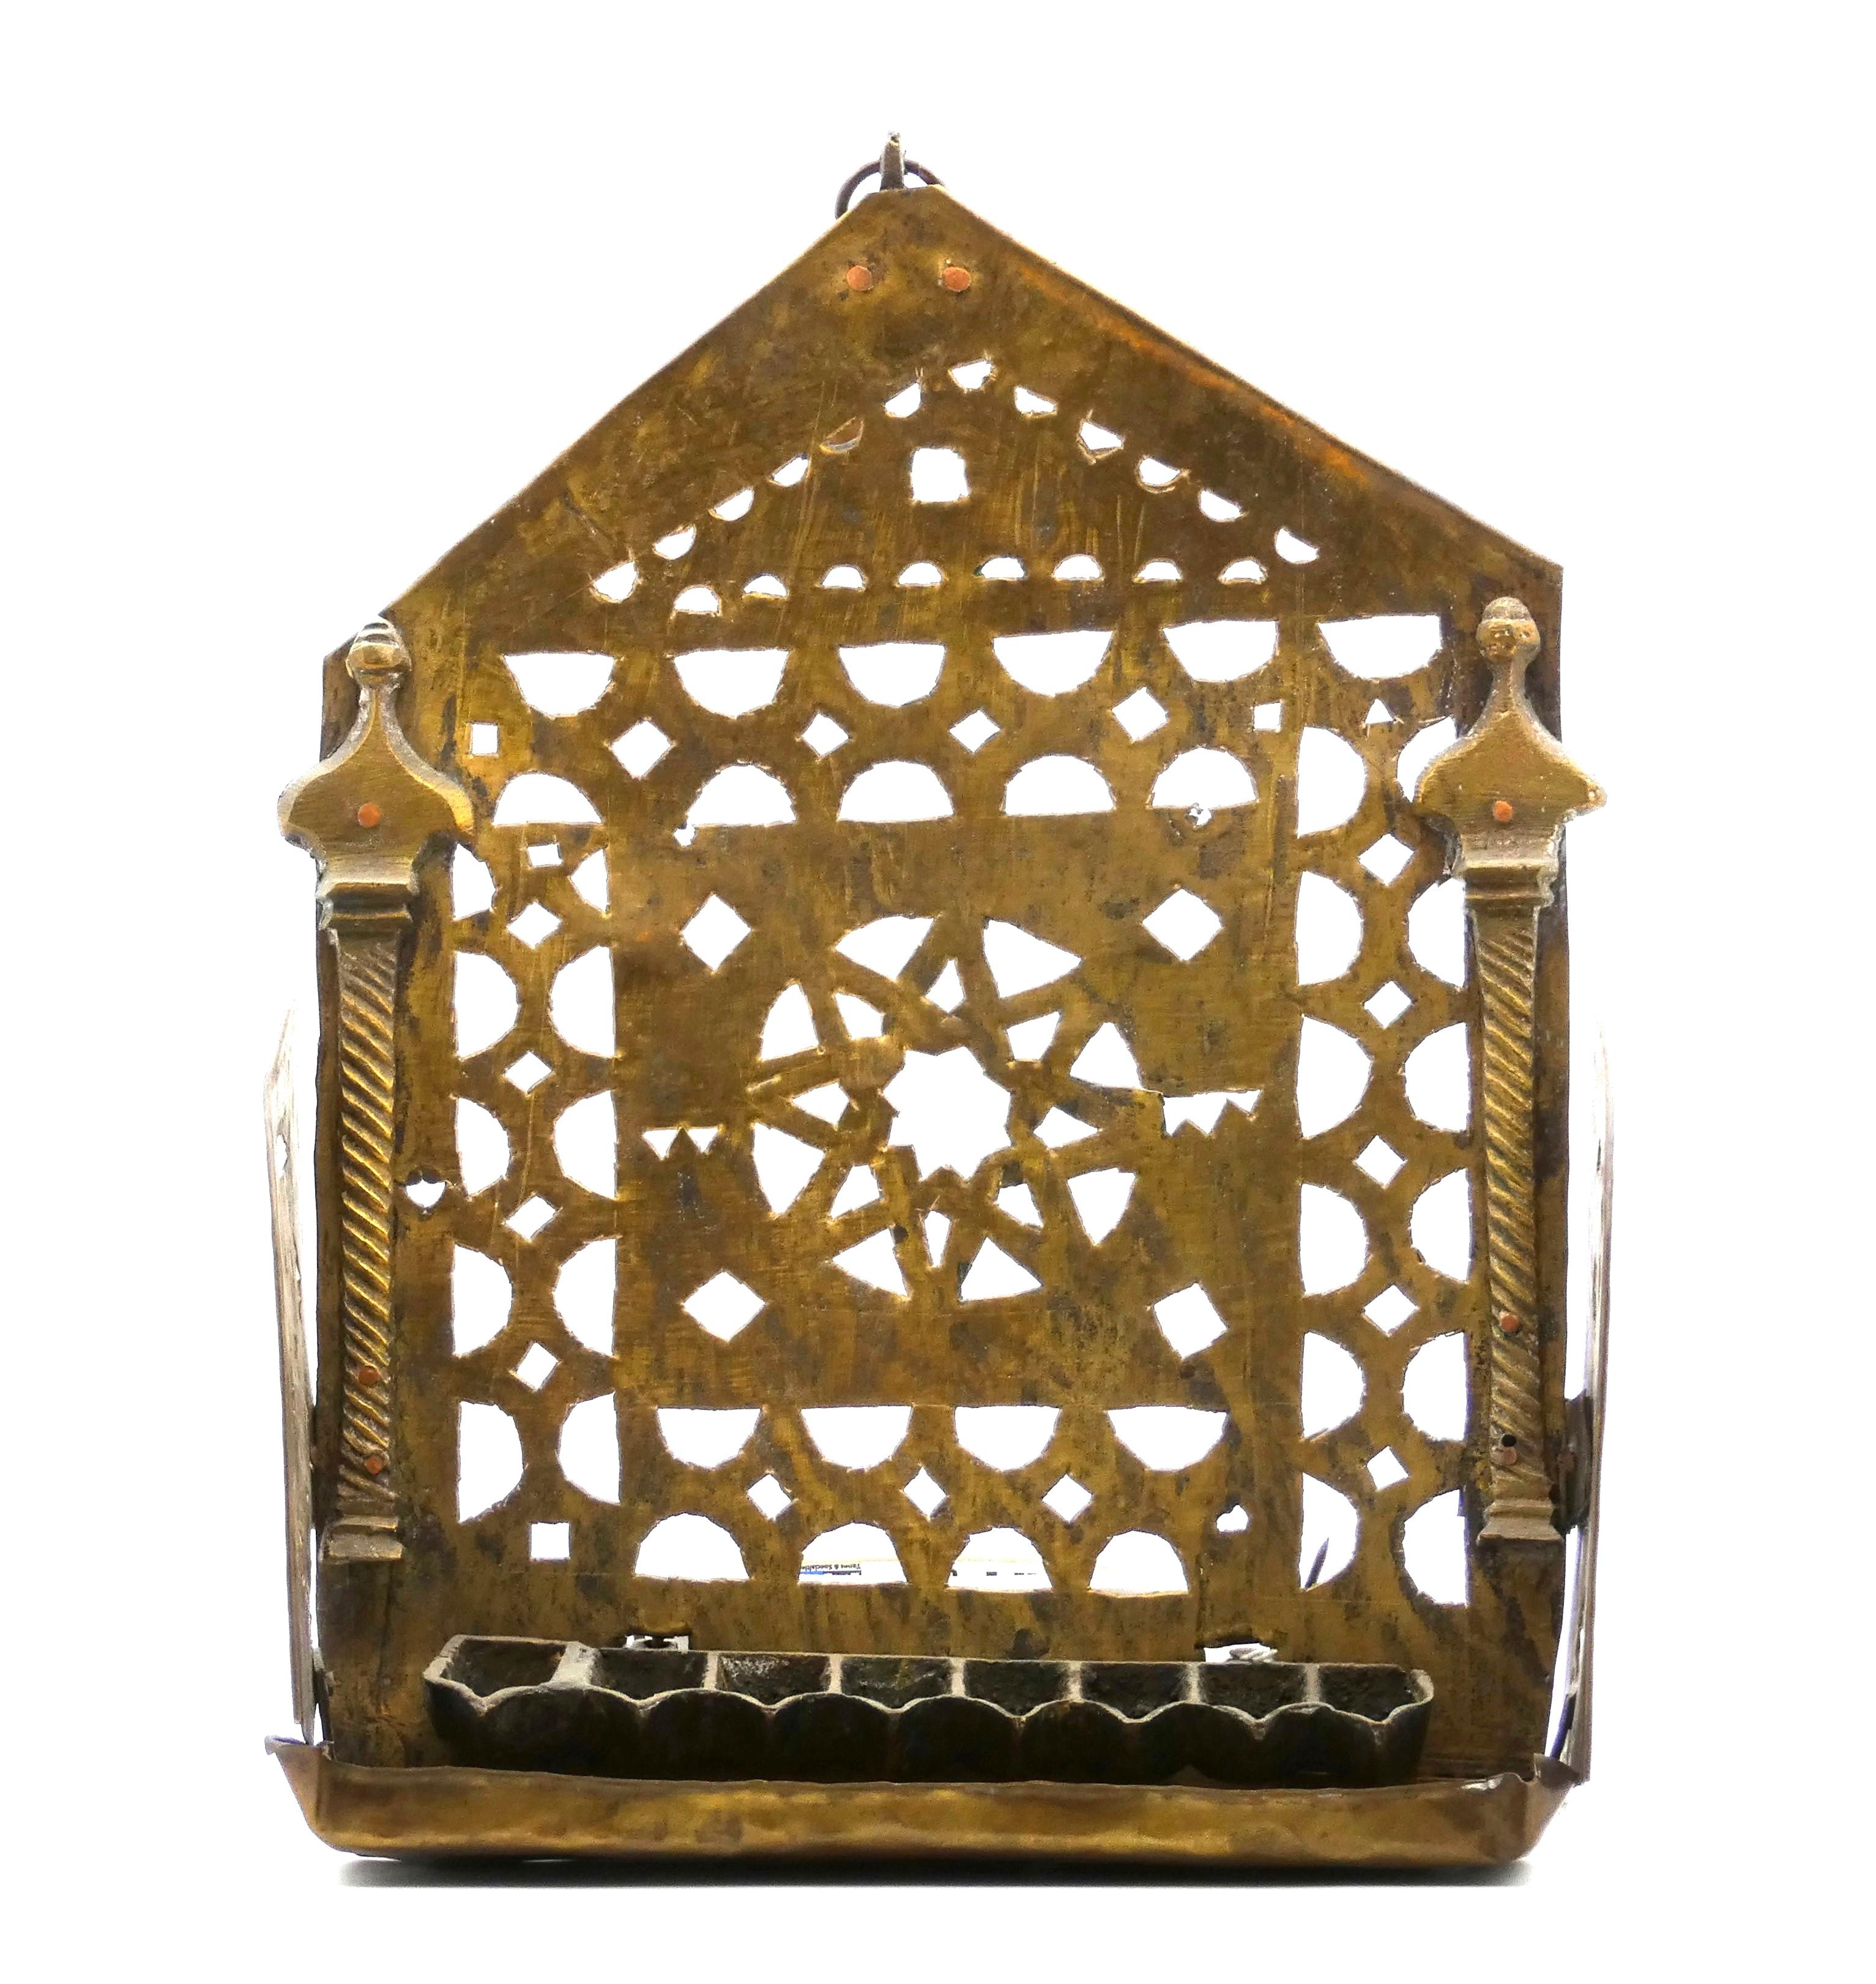 Lampe de Hanoukka marocaine décorée de colonnes et d'une authentique étoile de David.

Plaque arrière ajourée avec de nombreuses découpes quadrilobées et encadrée par deux colonnes architecturales torsadées flanquant une authentique étoile de David